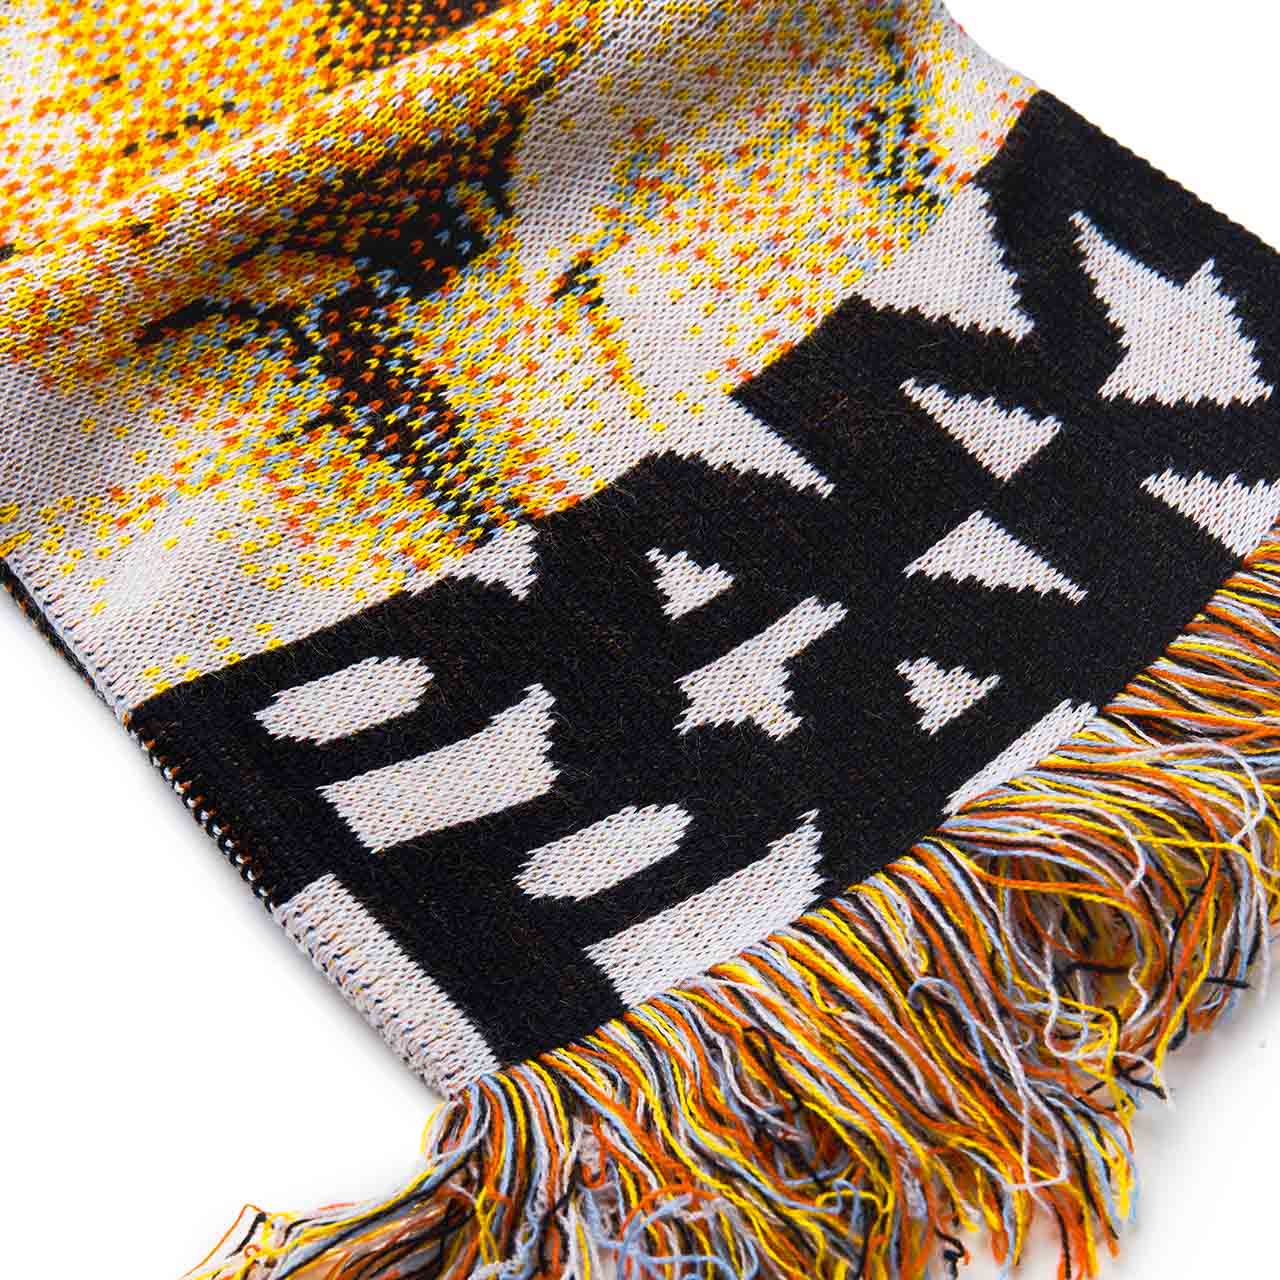 perks and mini manifest scarf (multi) - 8576-mlt - a.plus - Image - 2